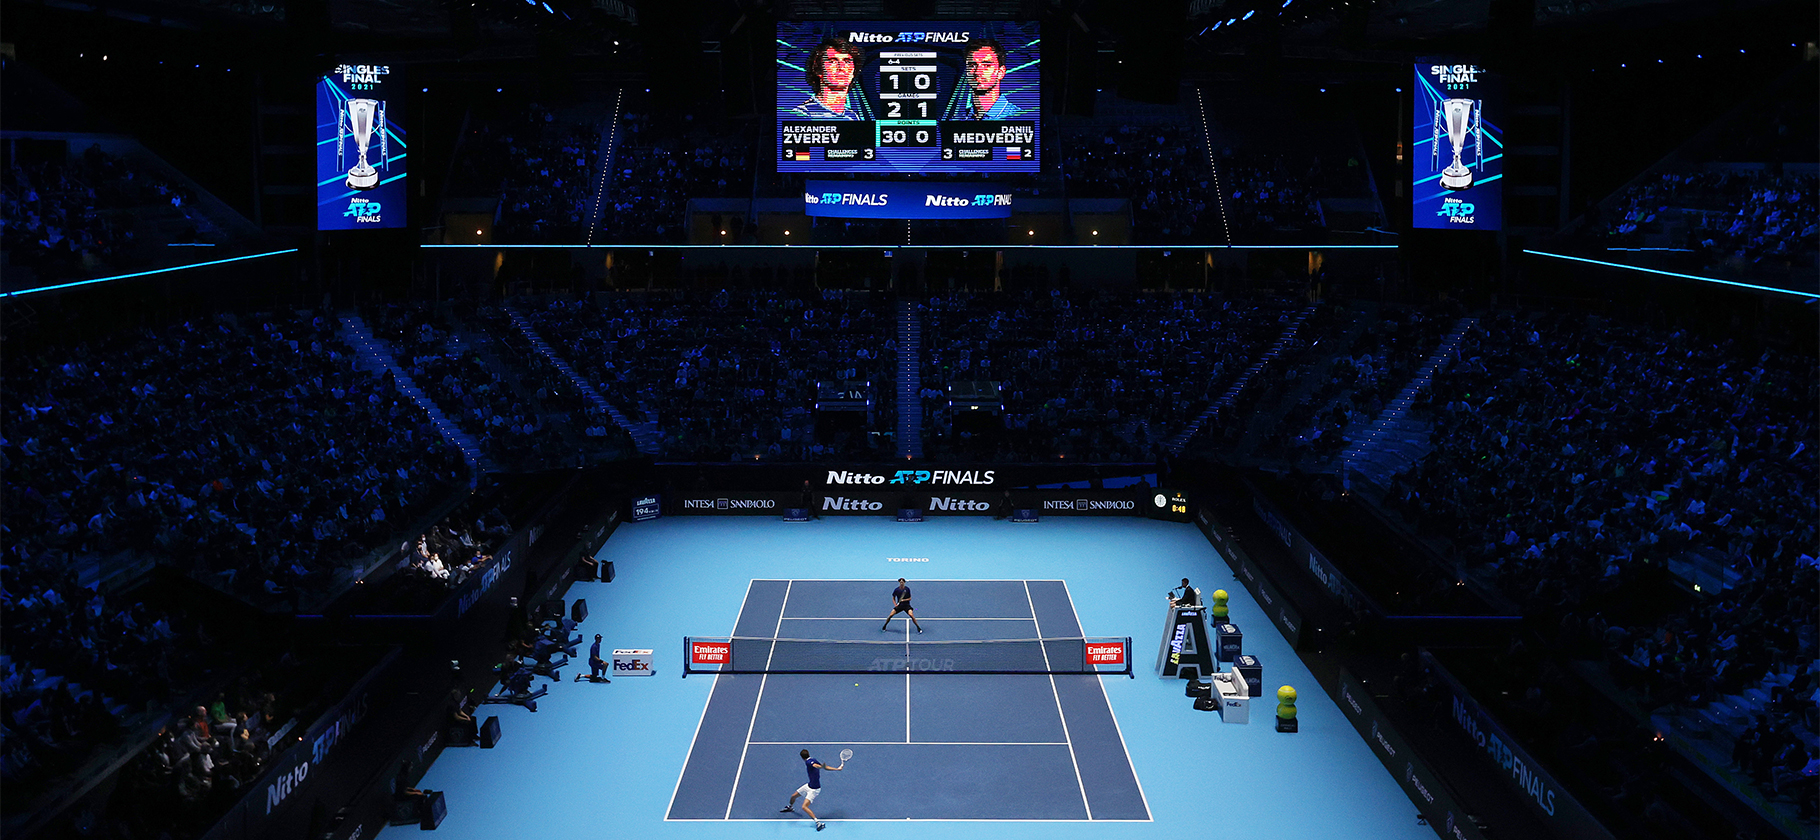 В Турине пройдет Итоговый турнир ATP: главное о финале теннисного сезона